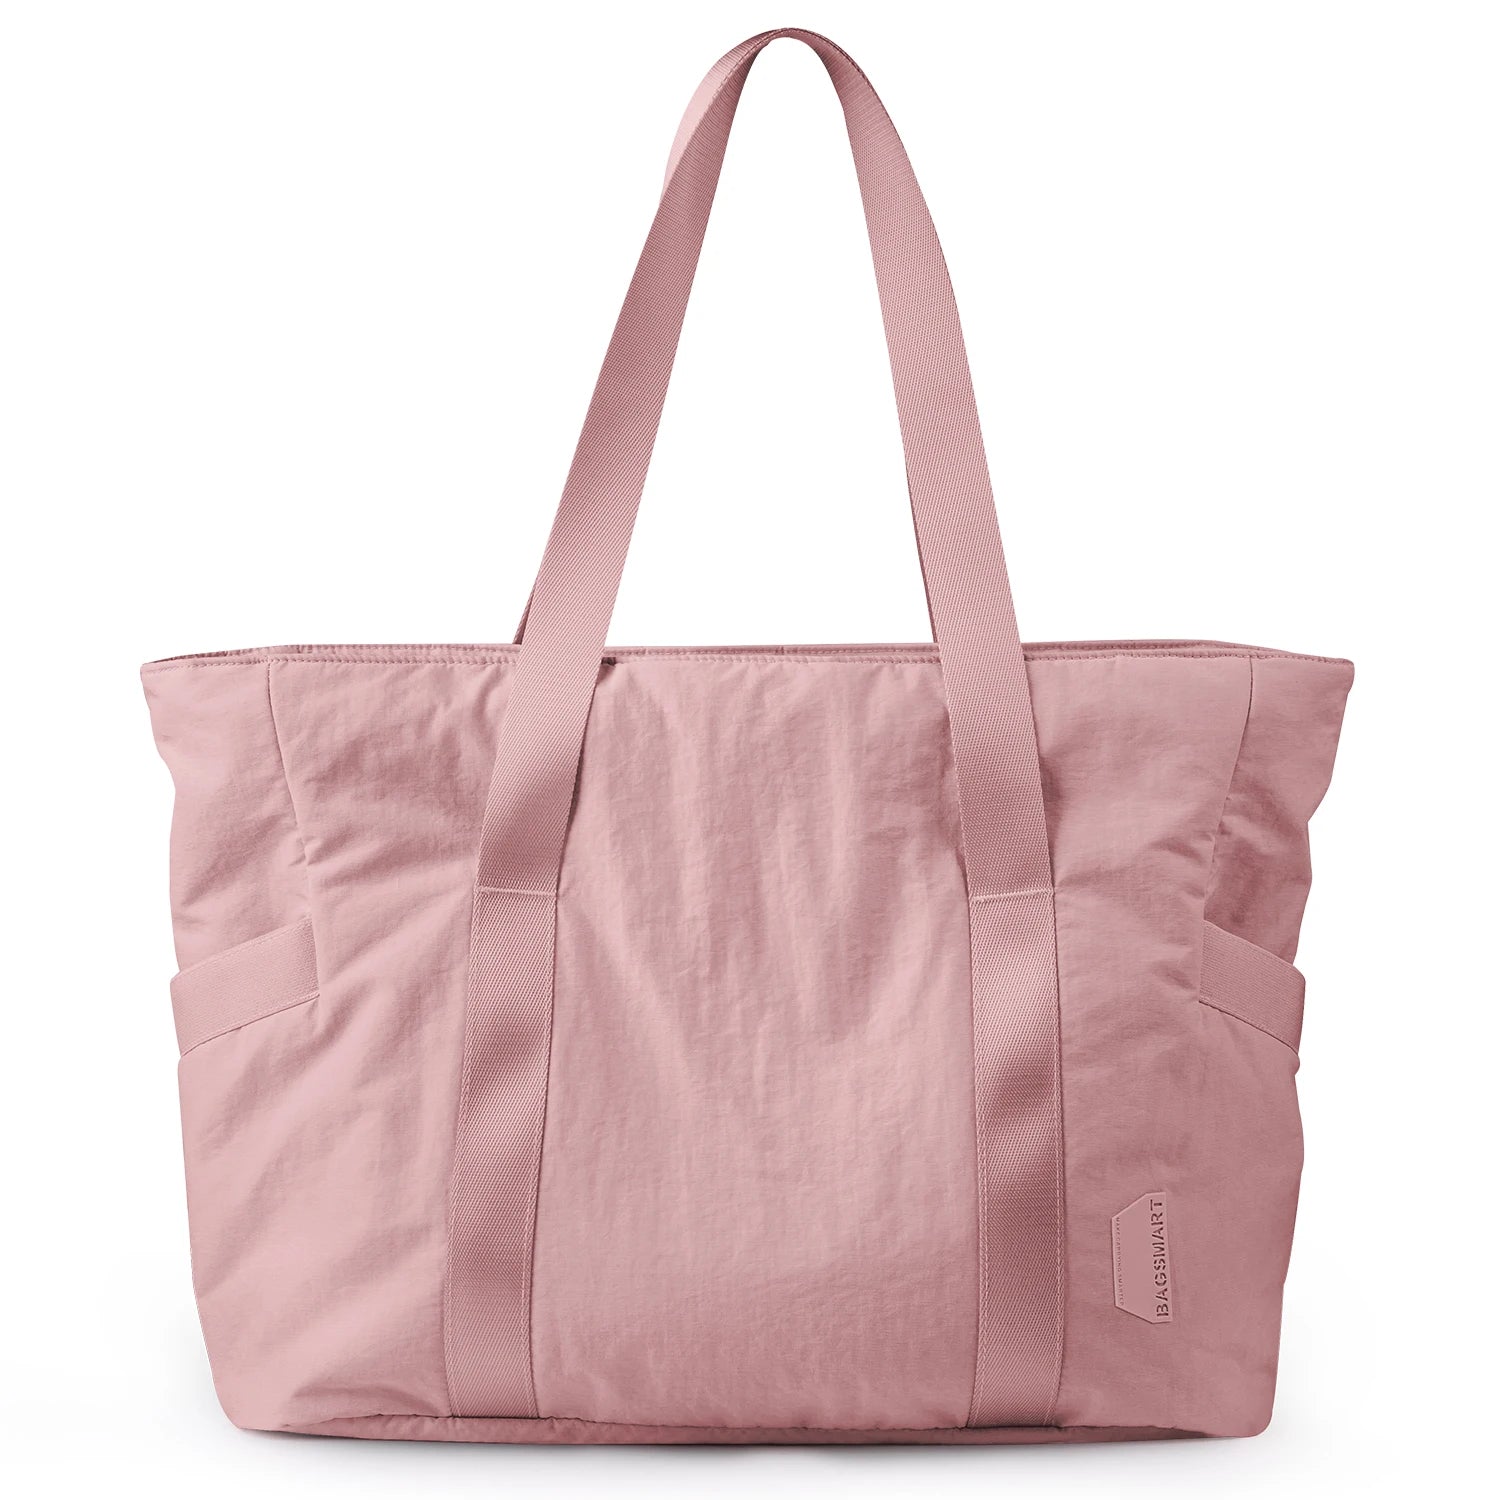 Large Capacity Women's Tote Bag dark pink M